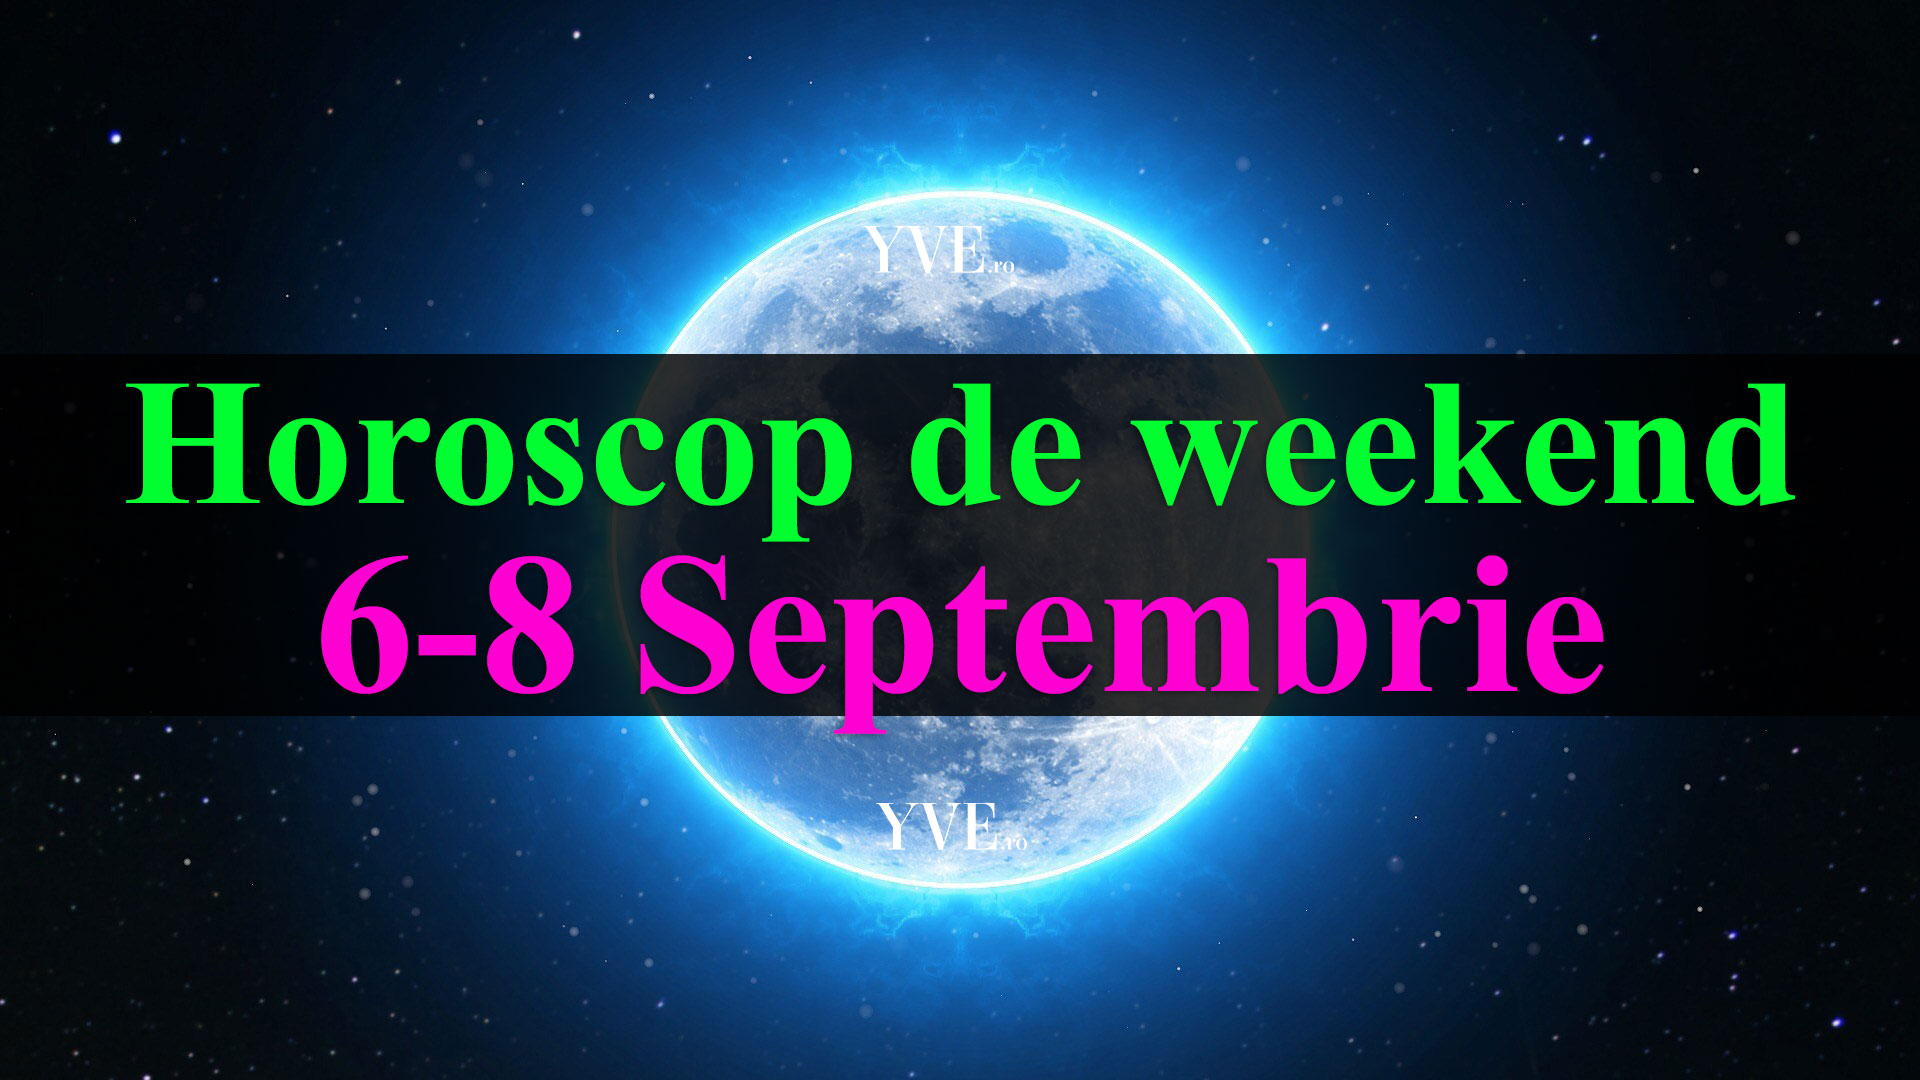 Horoscop de weekend 6-8 Septembrie 2019